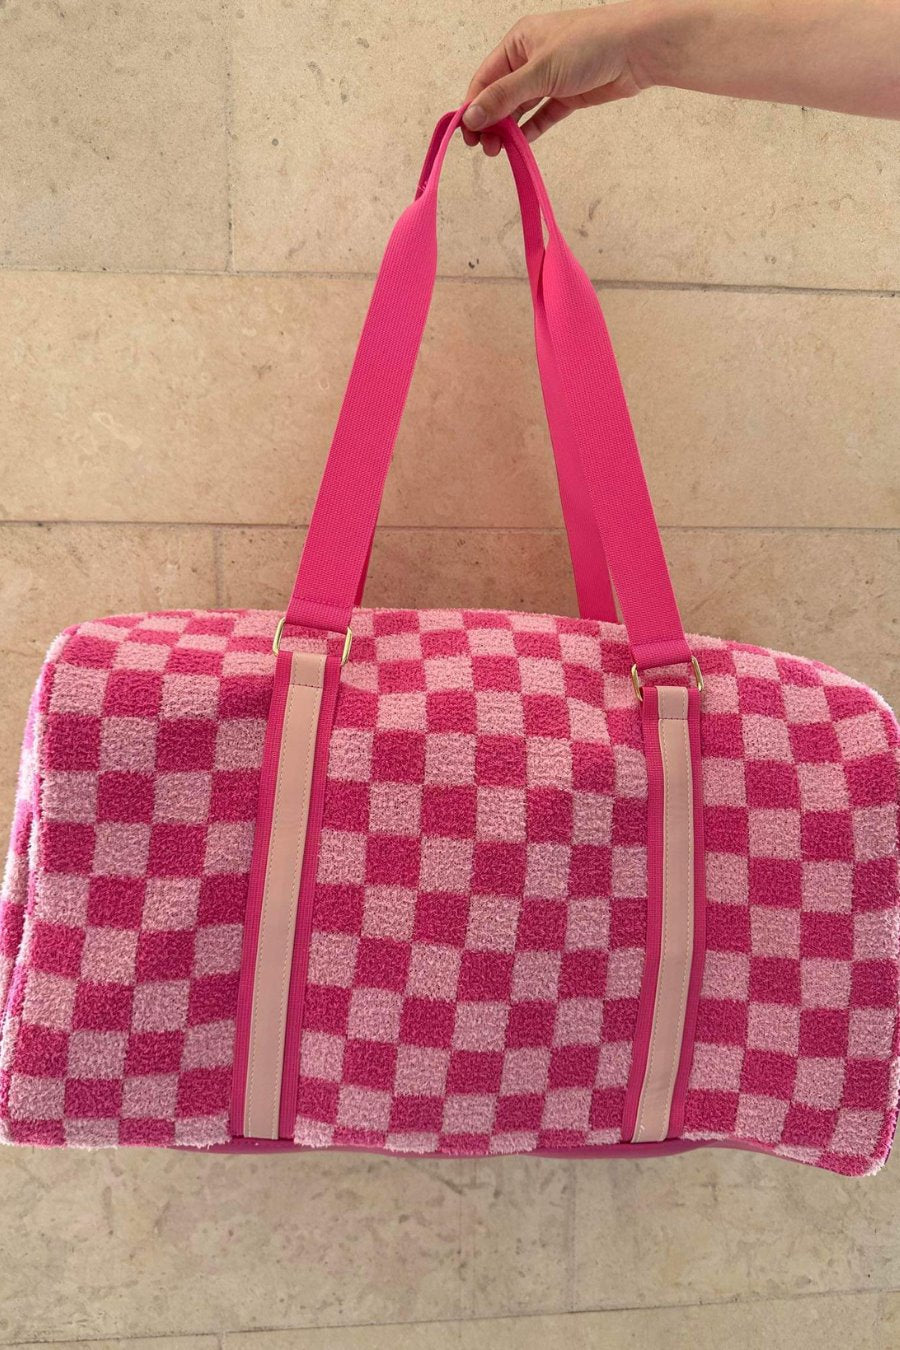 lv pink duffle bag